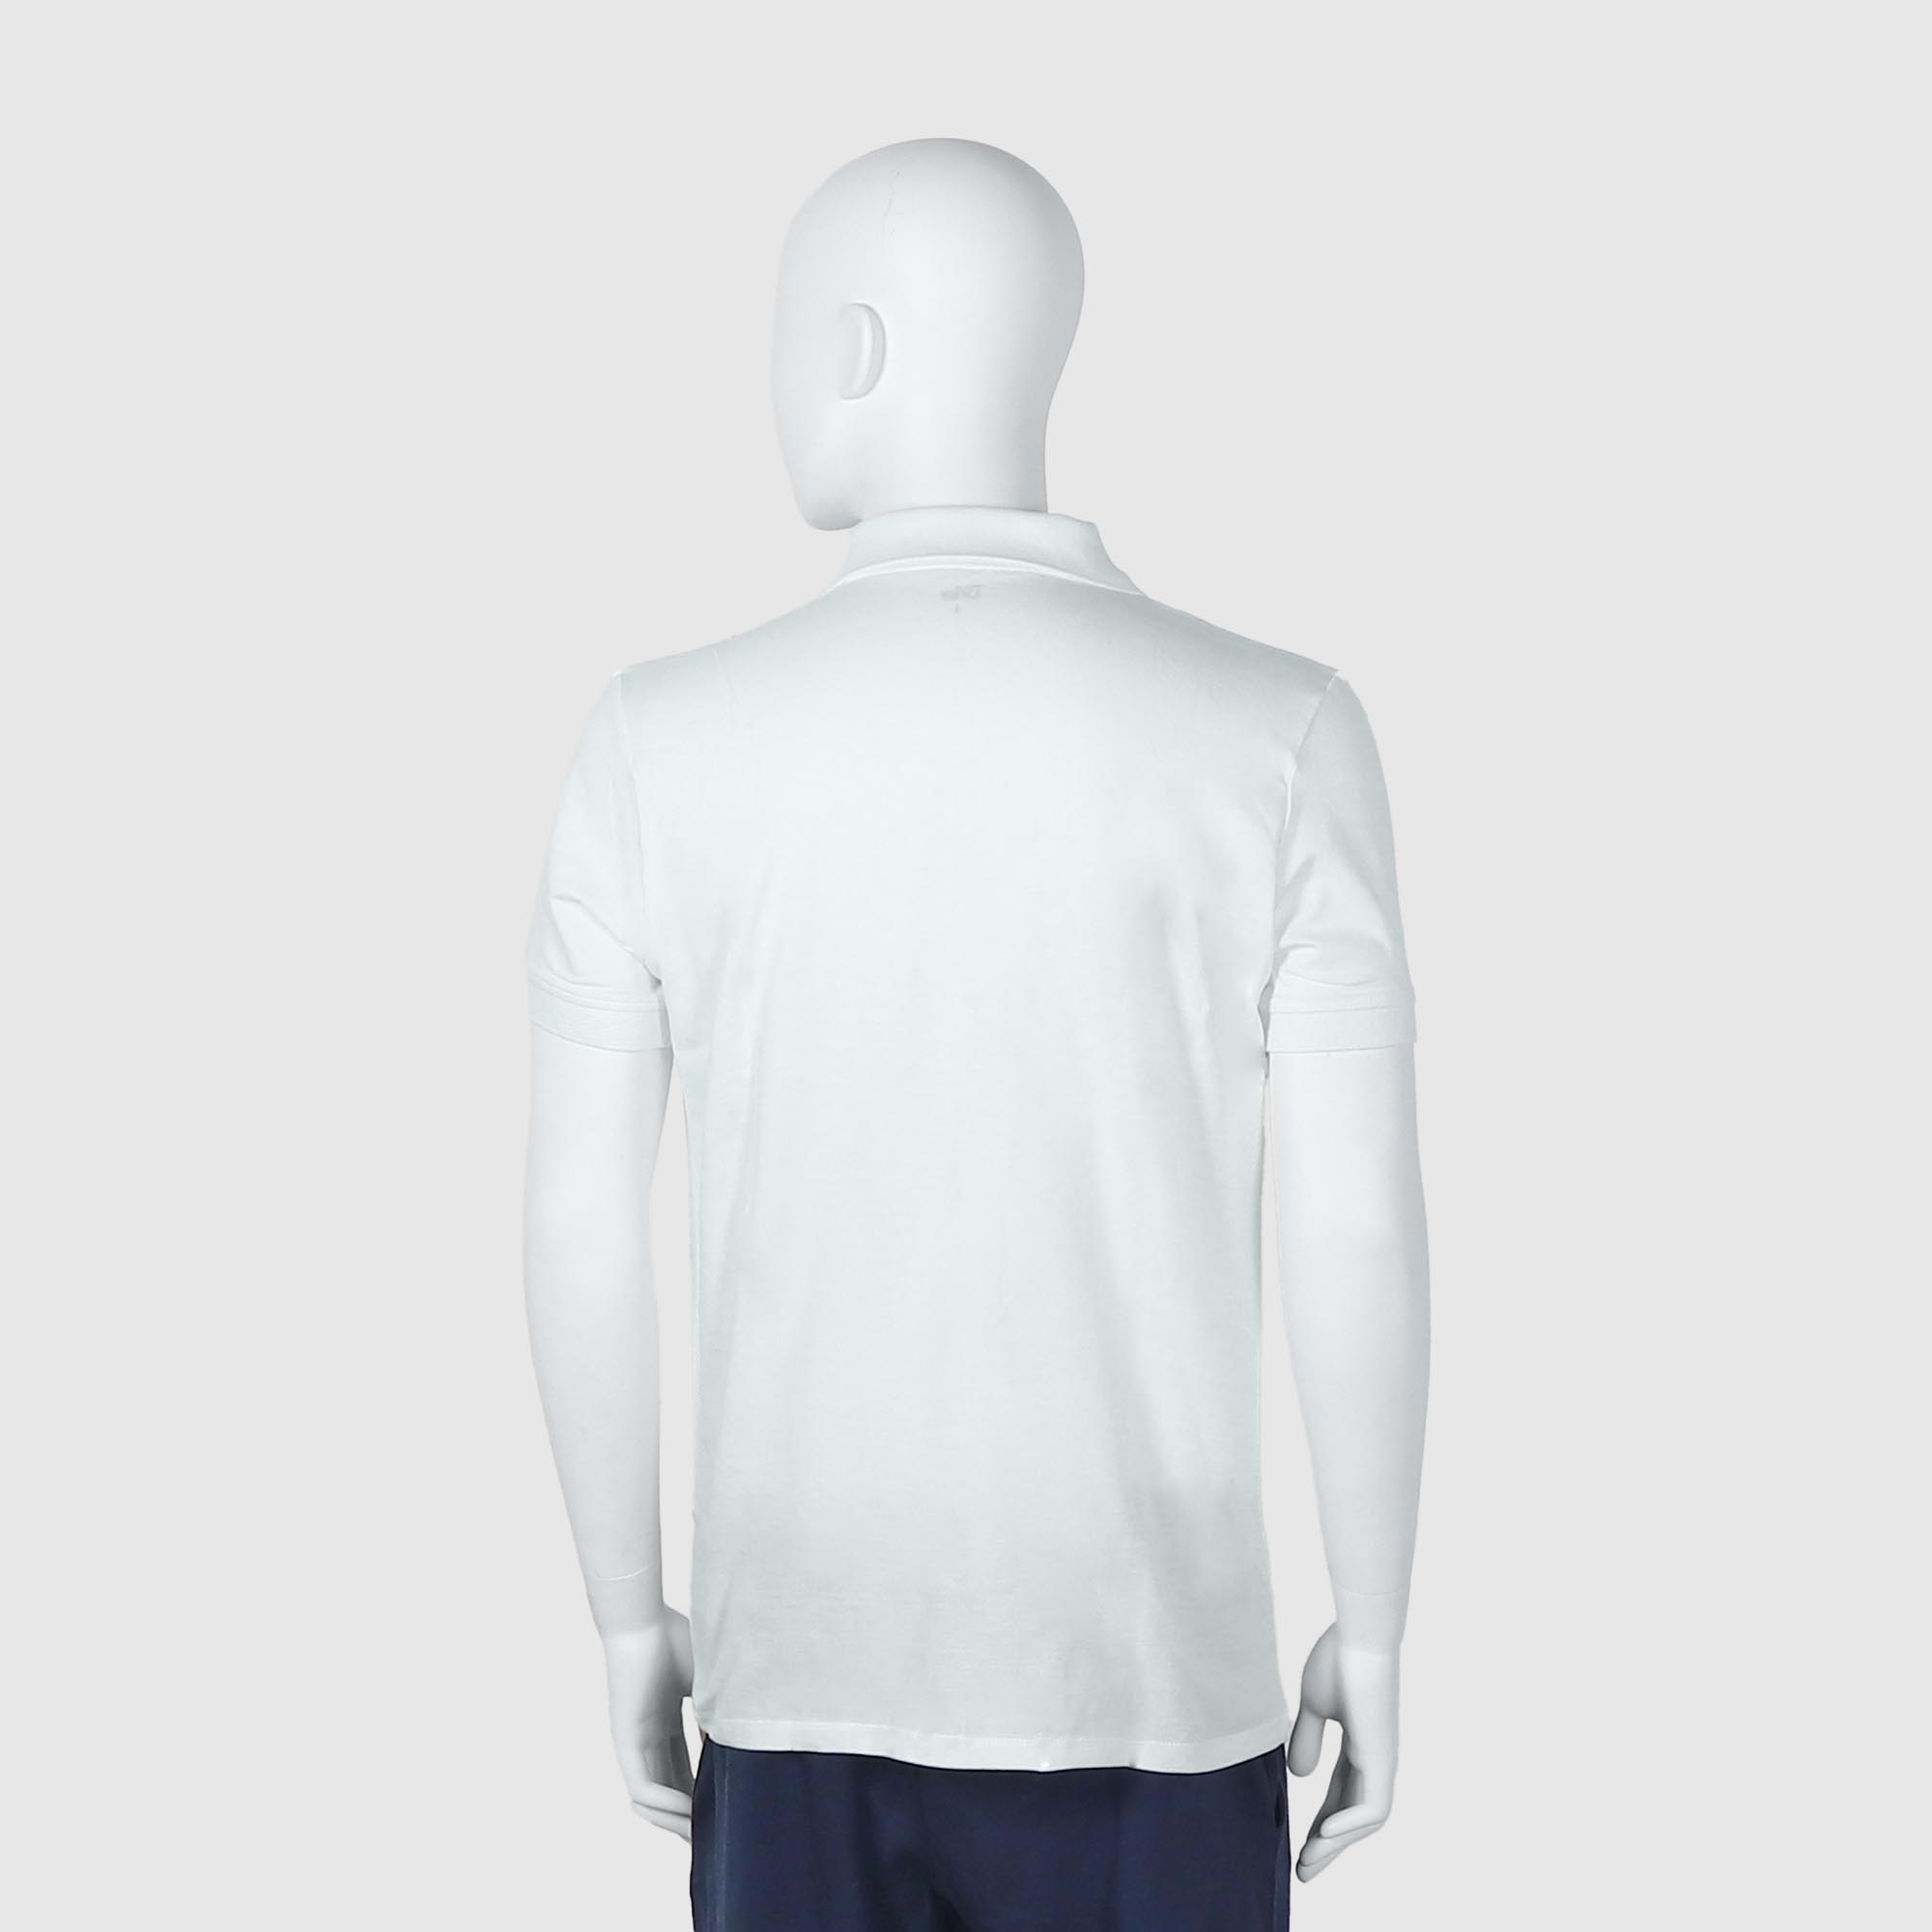 Мужская футболка-поло Diva Teks белая (DTD-07), цвет белый, размер 48-50 - фото 2